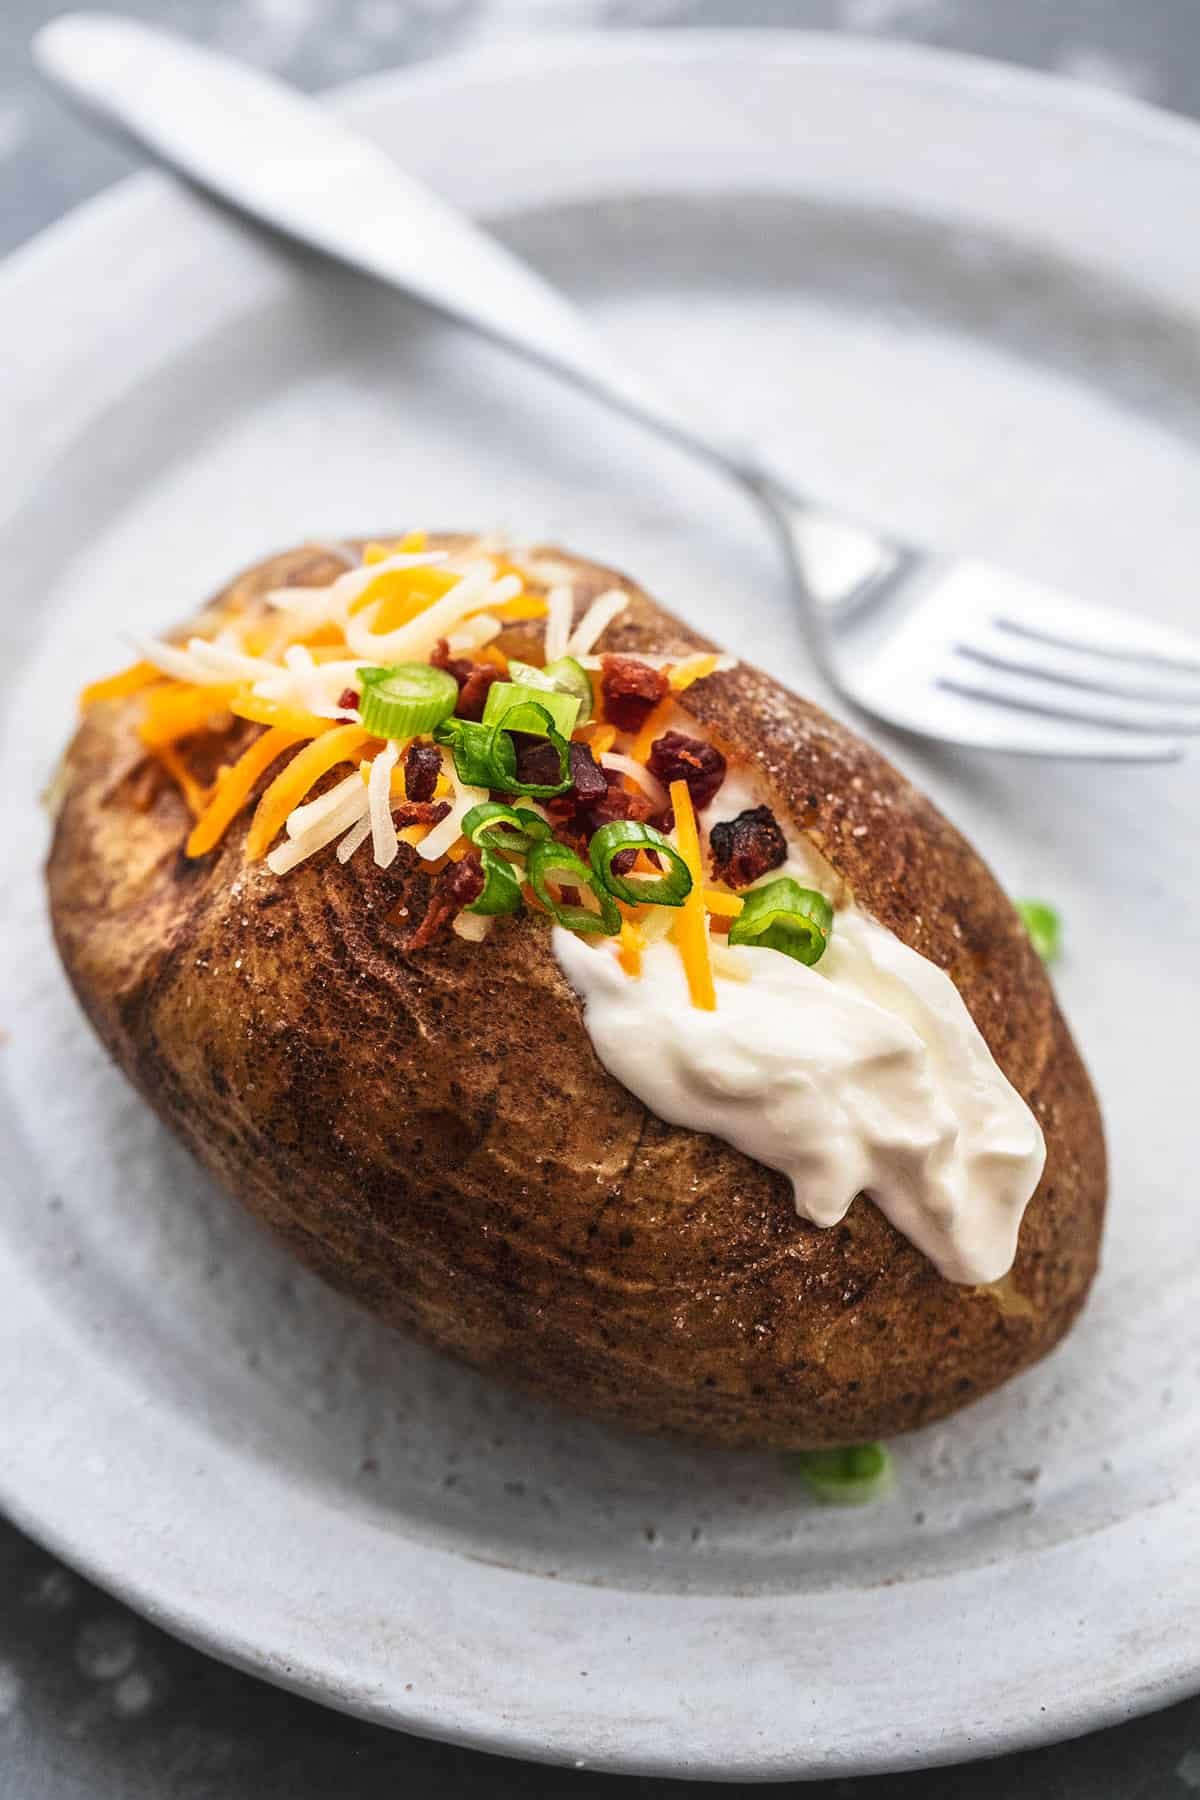 Instant Pot Baked Potatoes Recipe - Creme De La Crumb